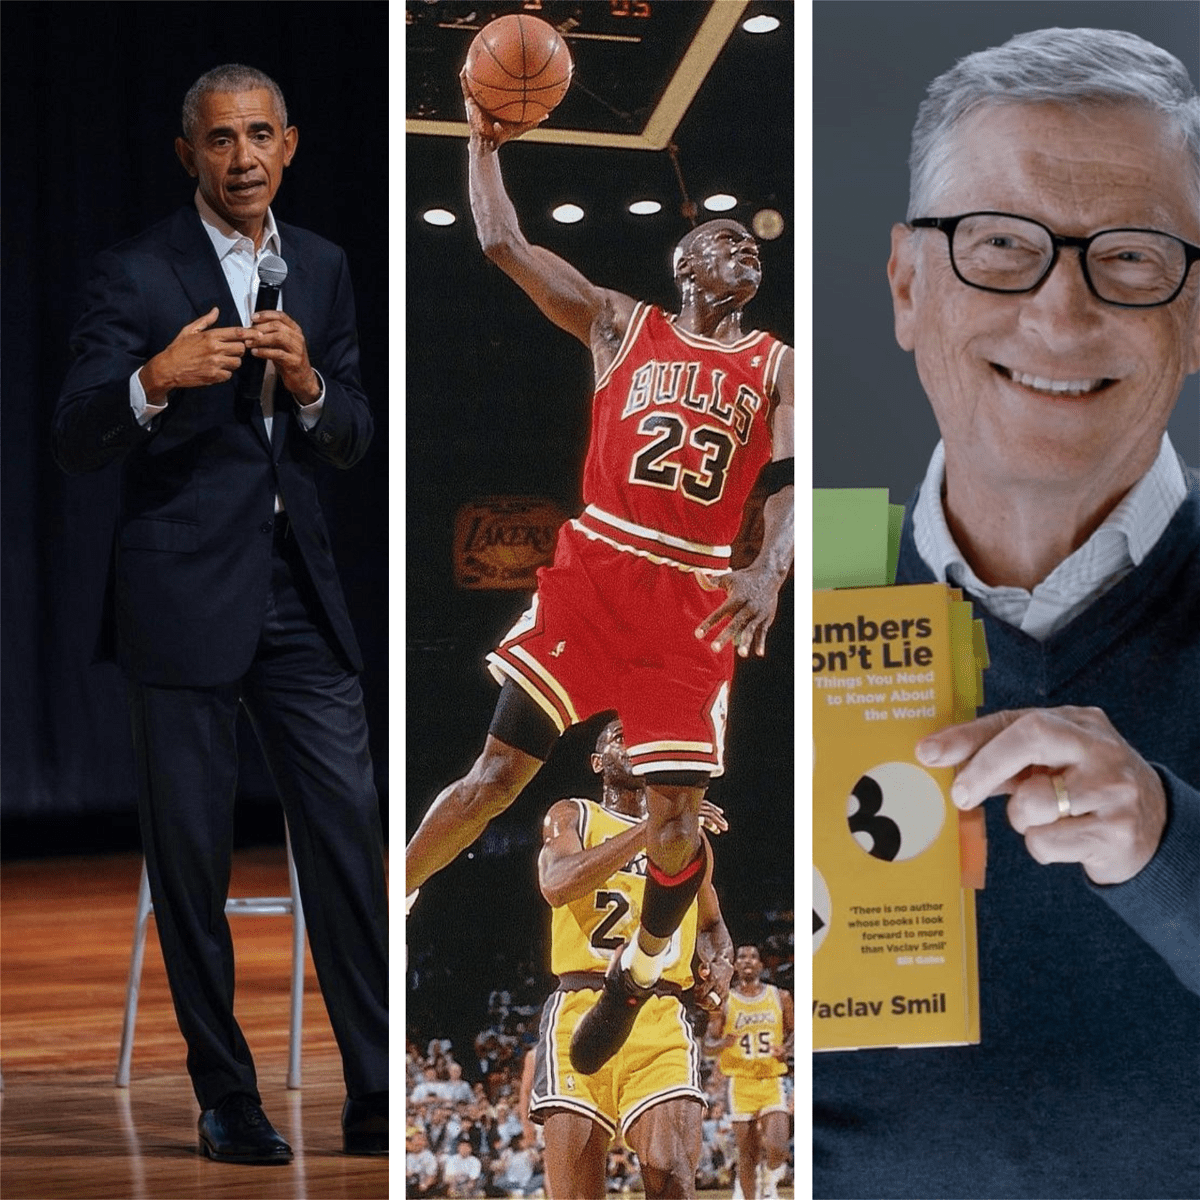 L'ancien président américain Barack Obama a plaisanté à propos de Michael Jordan, qui avait versé du kérosène sur son orteil coupé, alors que Bill Gates riait effrontément